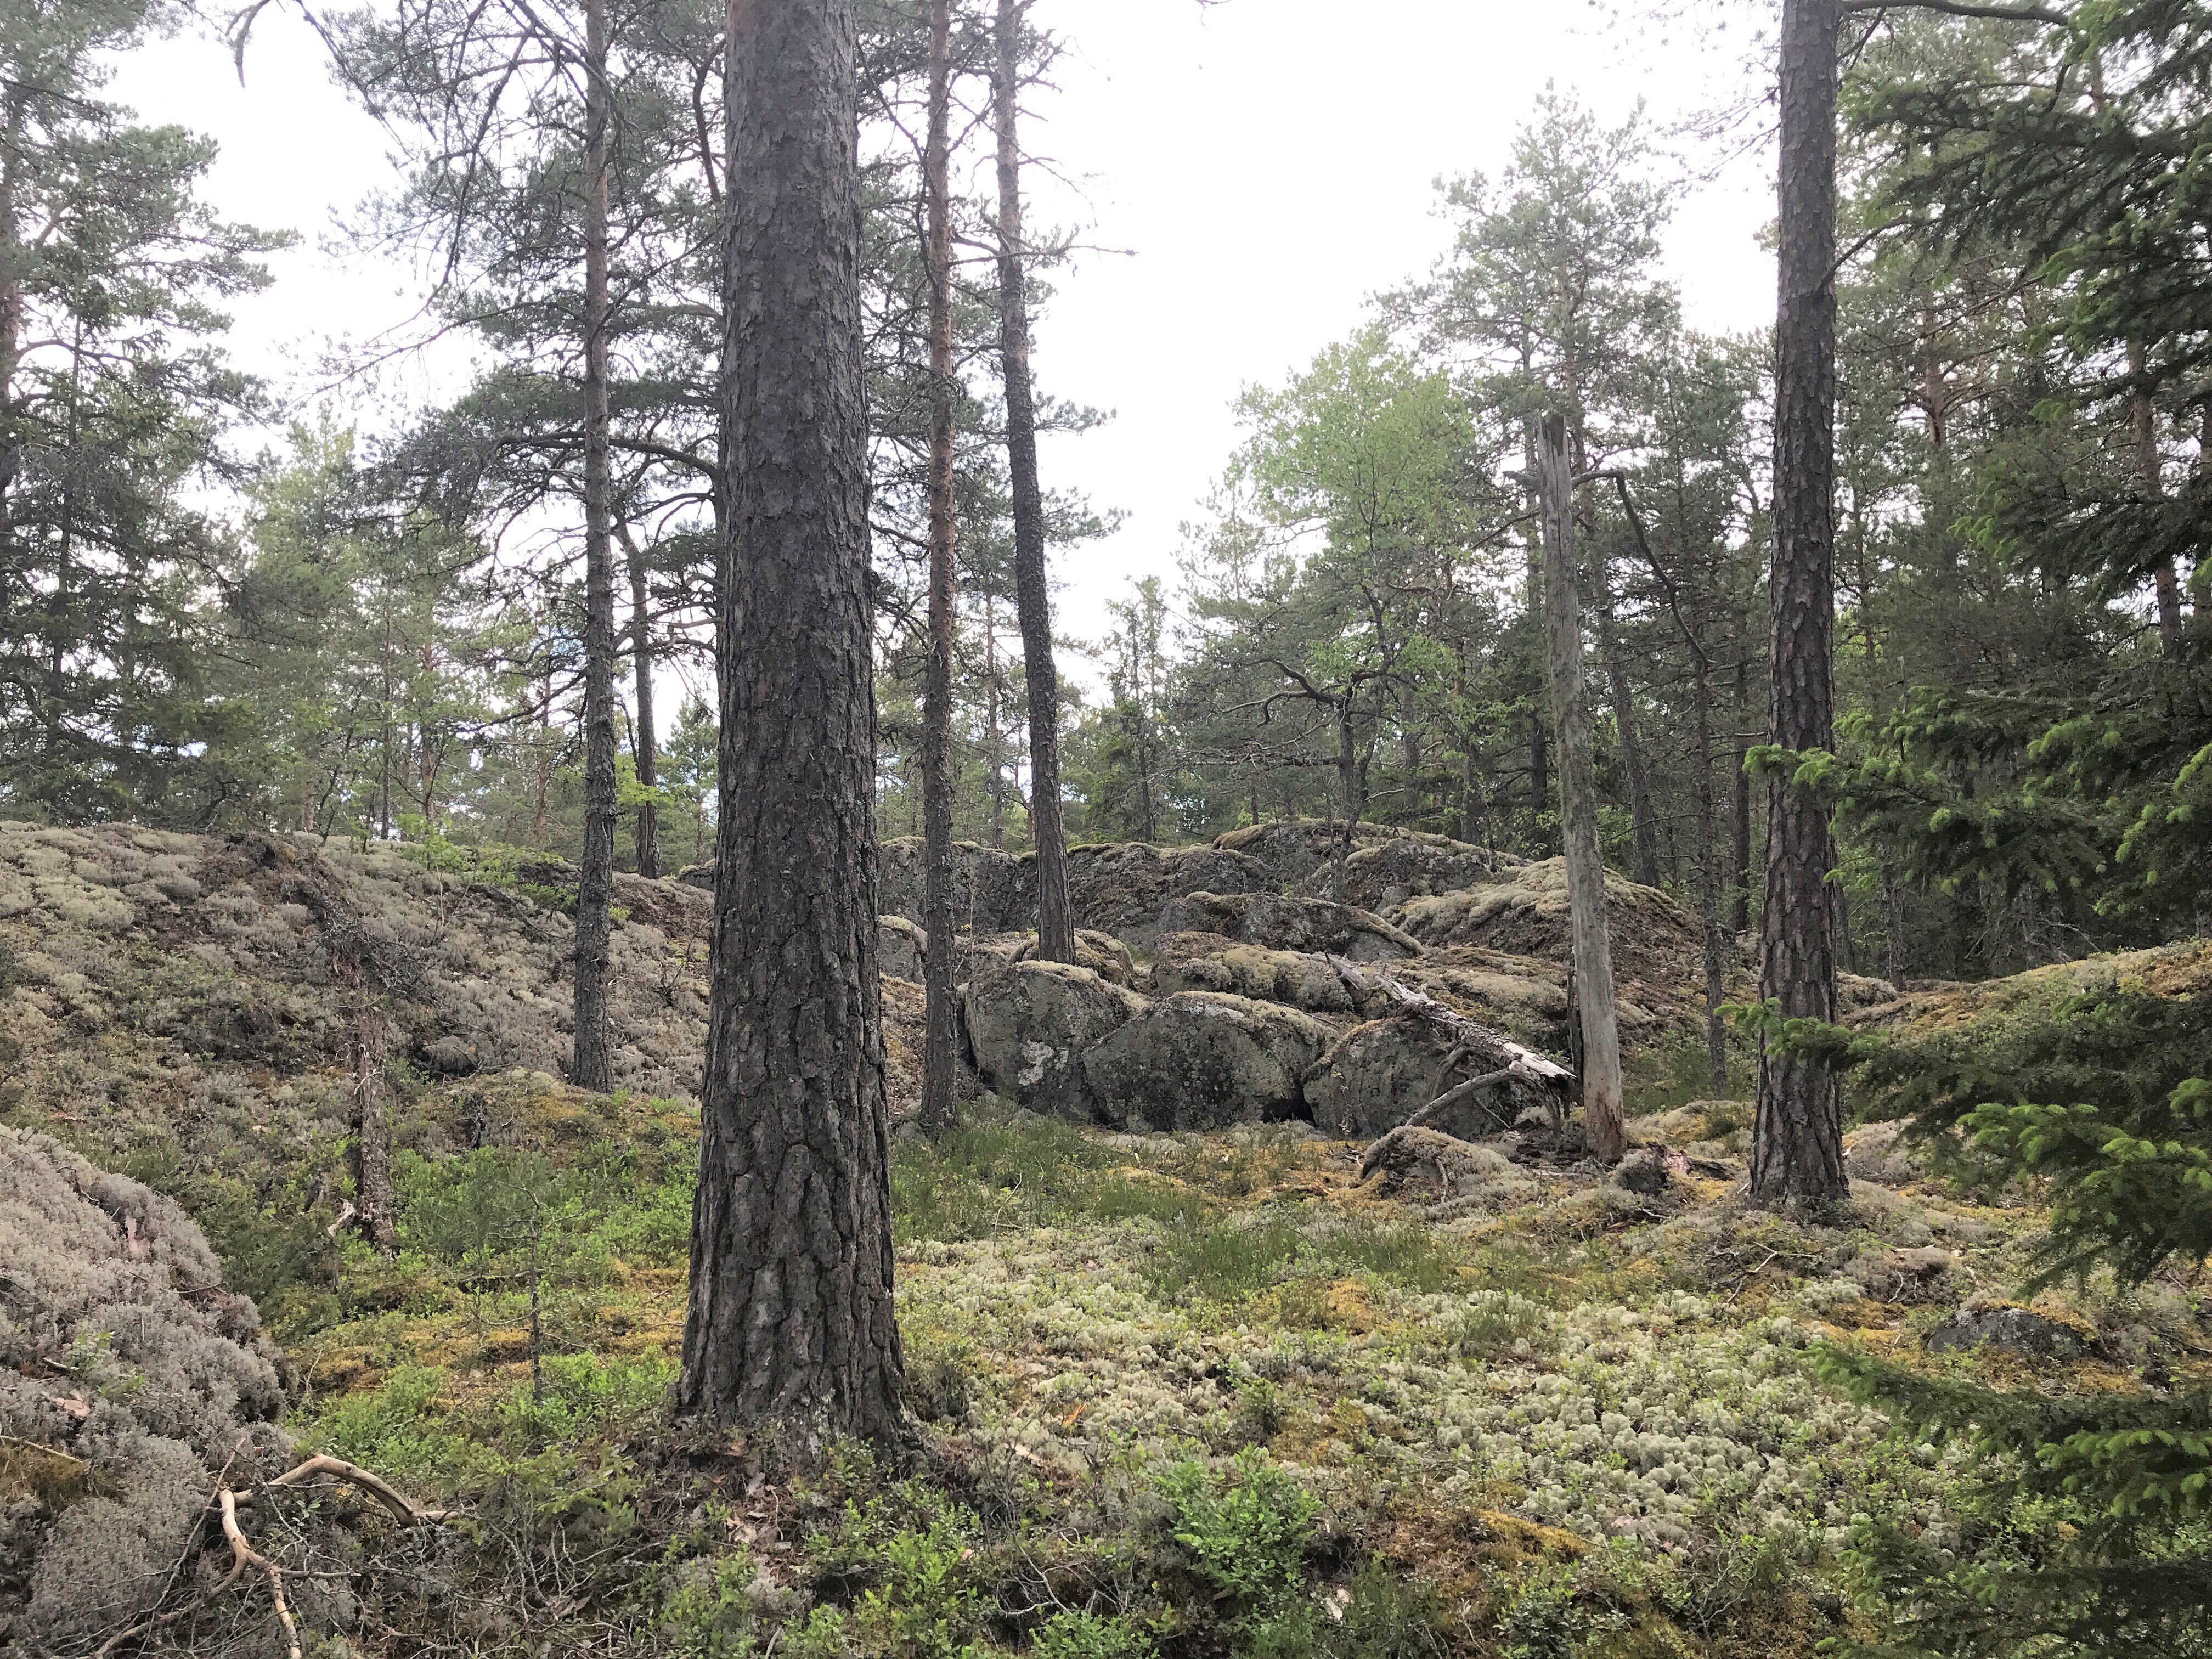 En låg bergsrygg går genom skogen. Marken är täckt av mossor och lavar och det finns många gamla träd runtom.